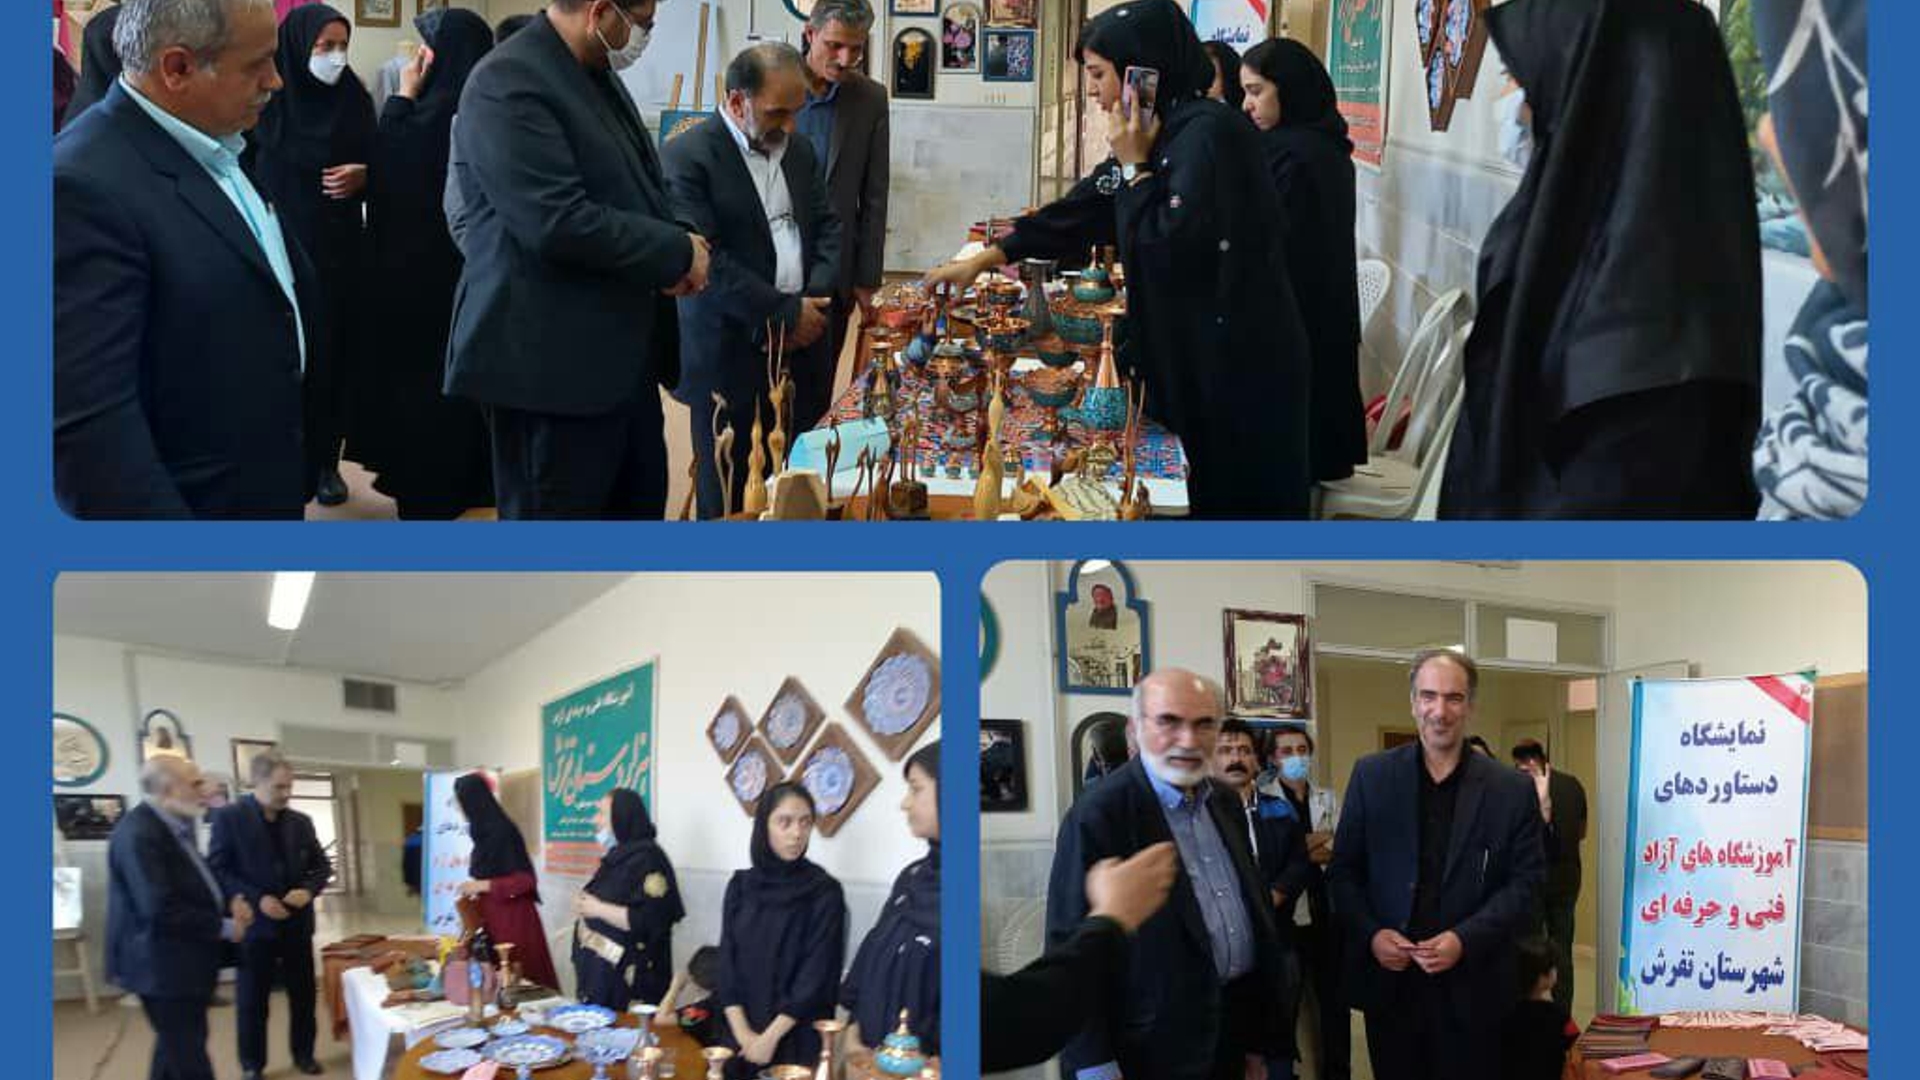 افتتاح نمایشگاه "مهارت پل اشتغال"  در شهرستان تفرش